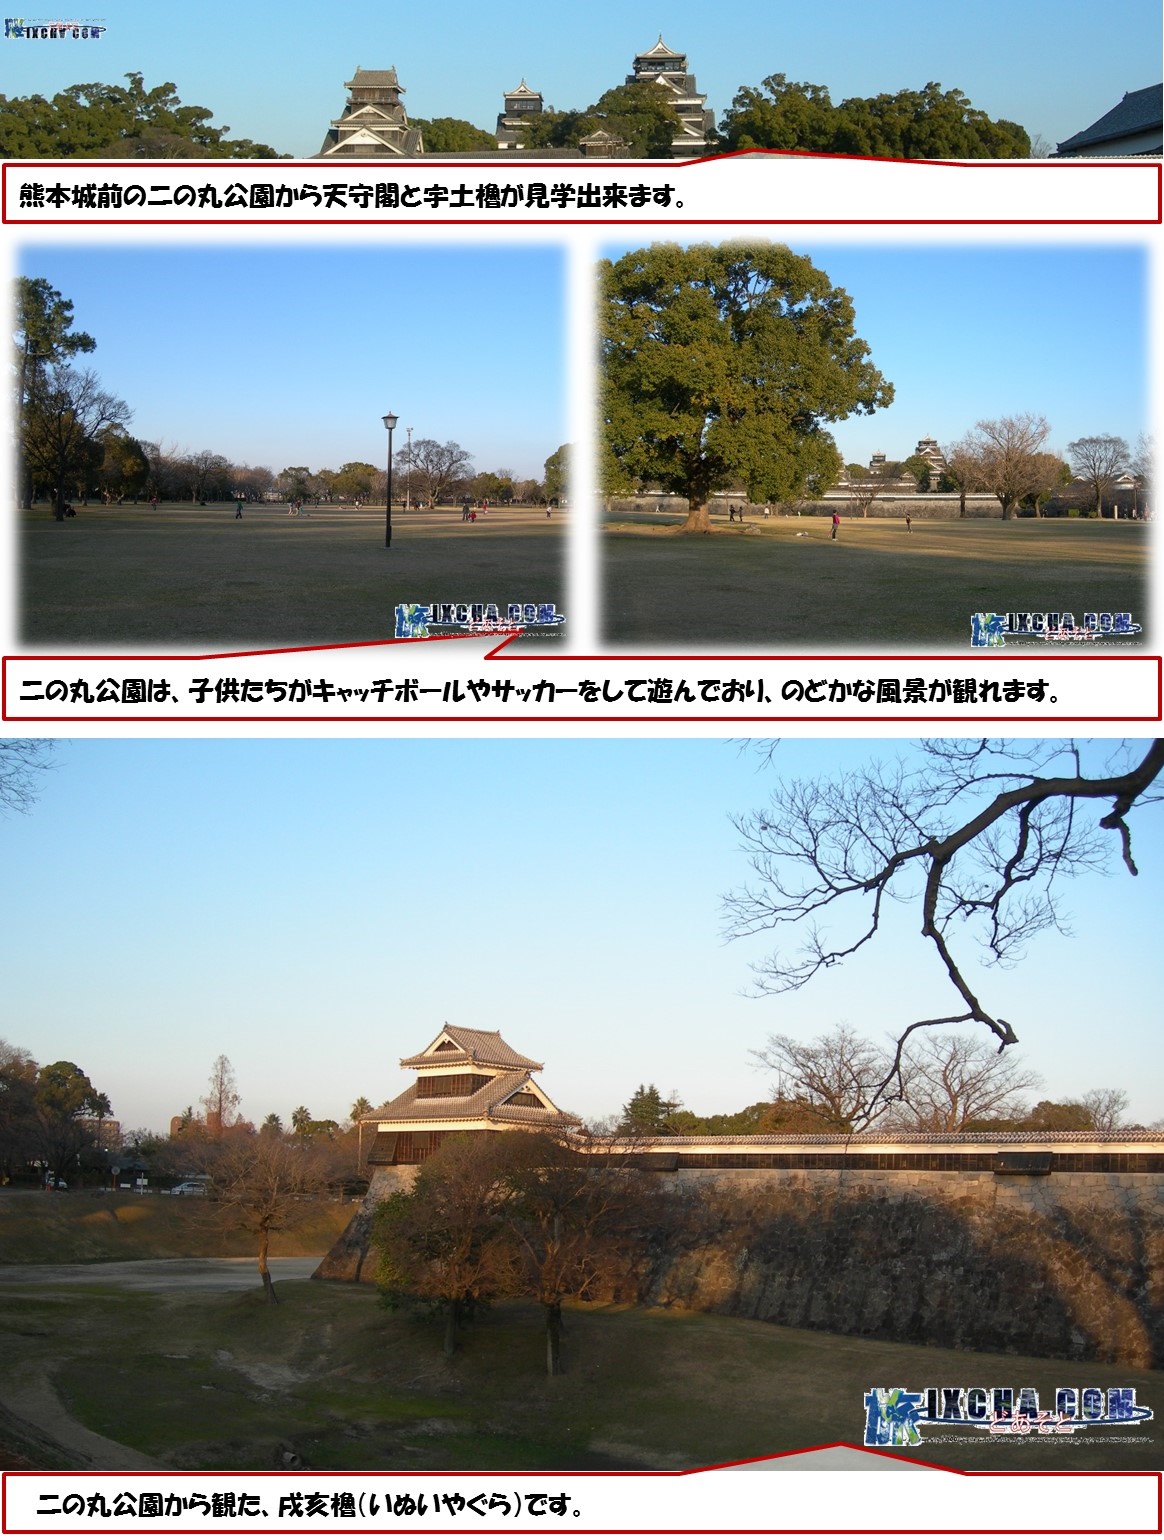 熊本城前の二の丸公園から天守閣と宇土櫓が見学出来ます。　二の丸公園は、子供たちがキャッチボールやサッカーをして遊んでおり、のどかな風景が観れます。　二の丸公園から観た、戌亥櫓（いぬいやぐら）です。 